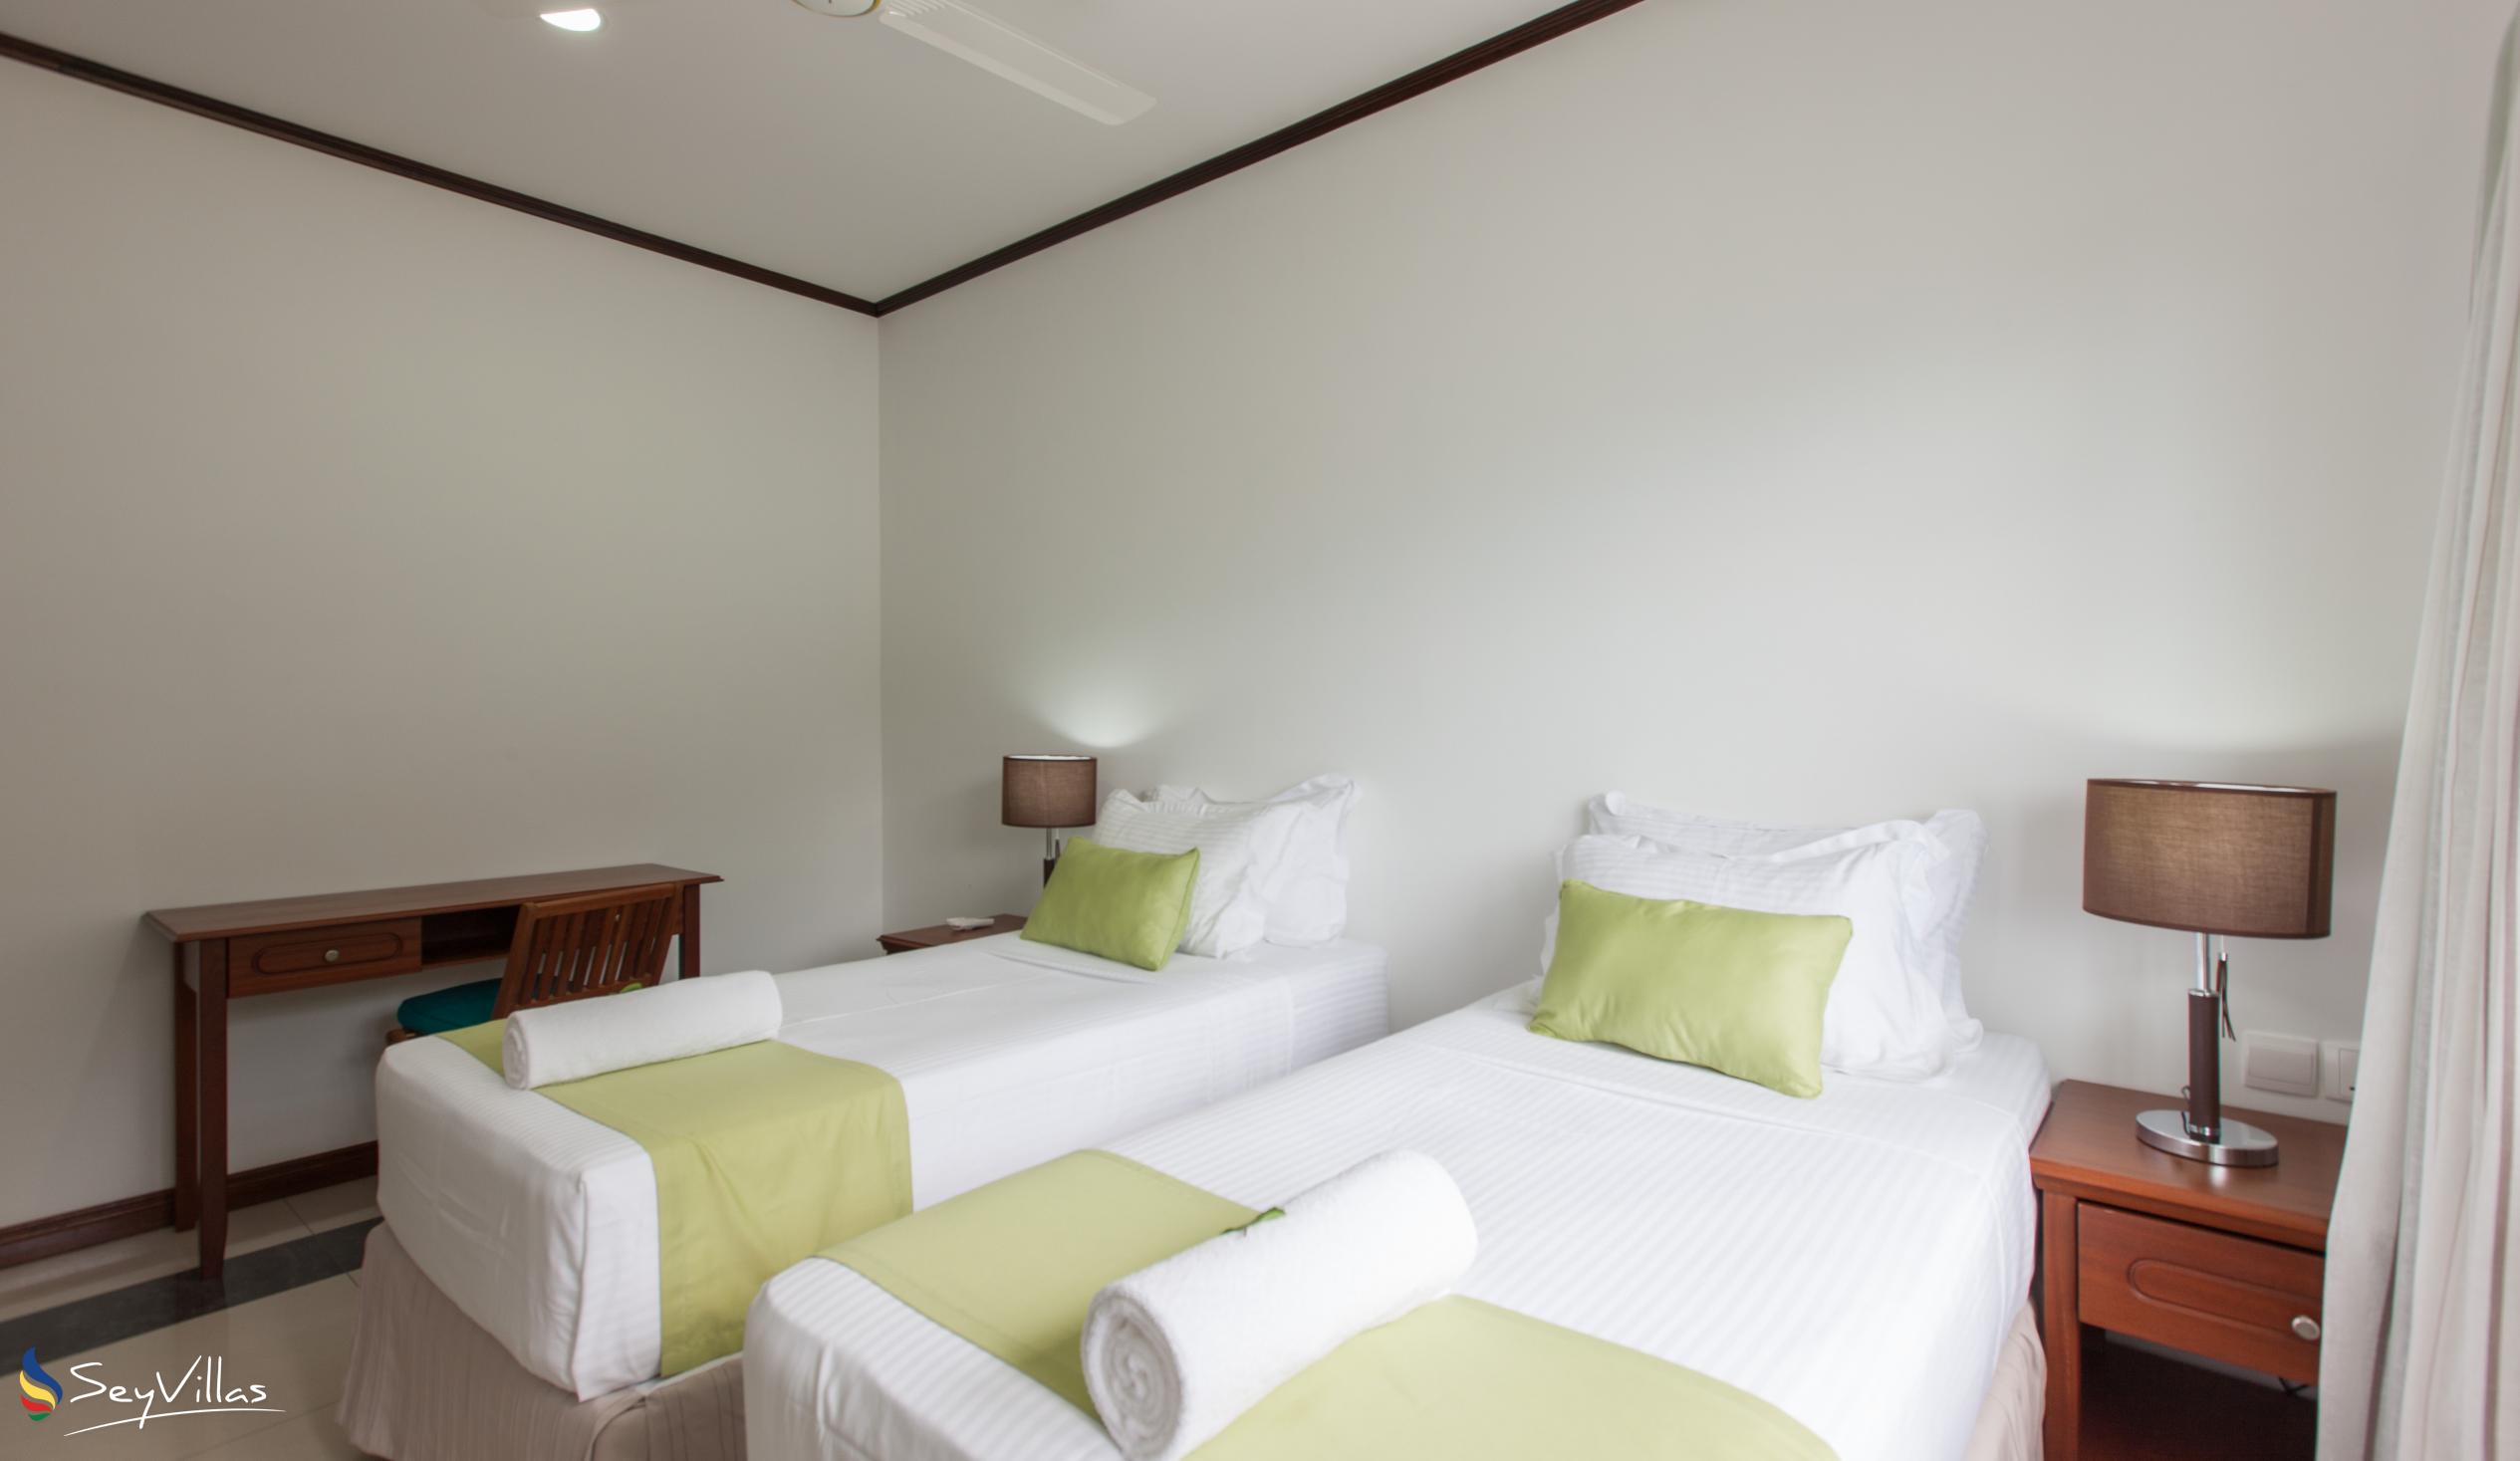 Foto 56: Bambous River Lodge - Appartement 2 chambres - Mahé (Seychelles)